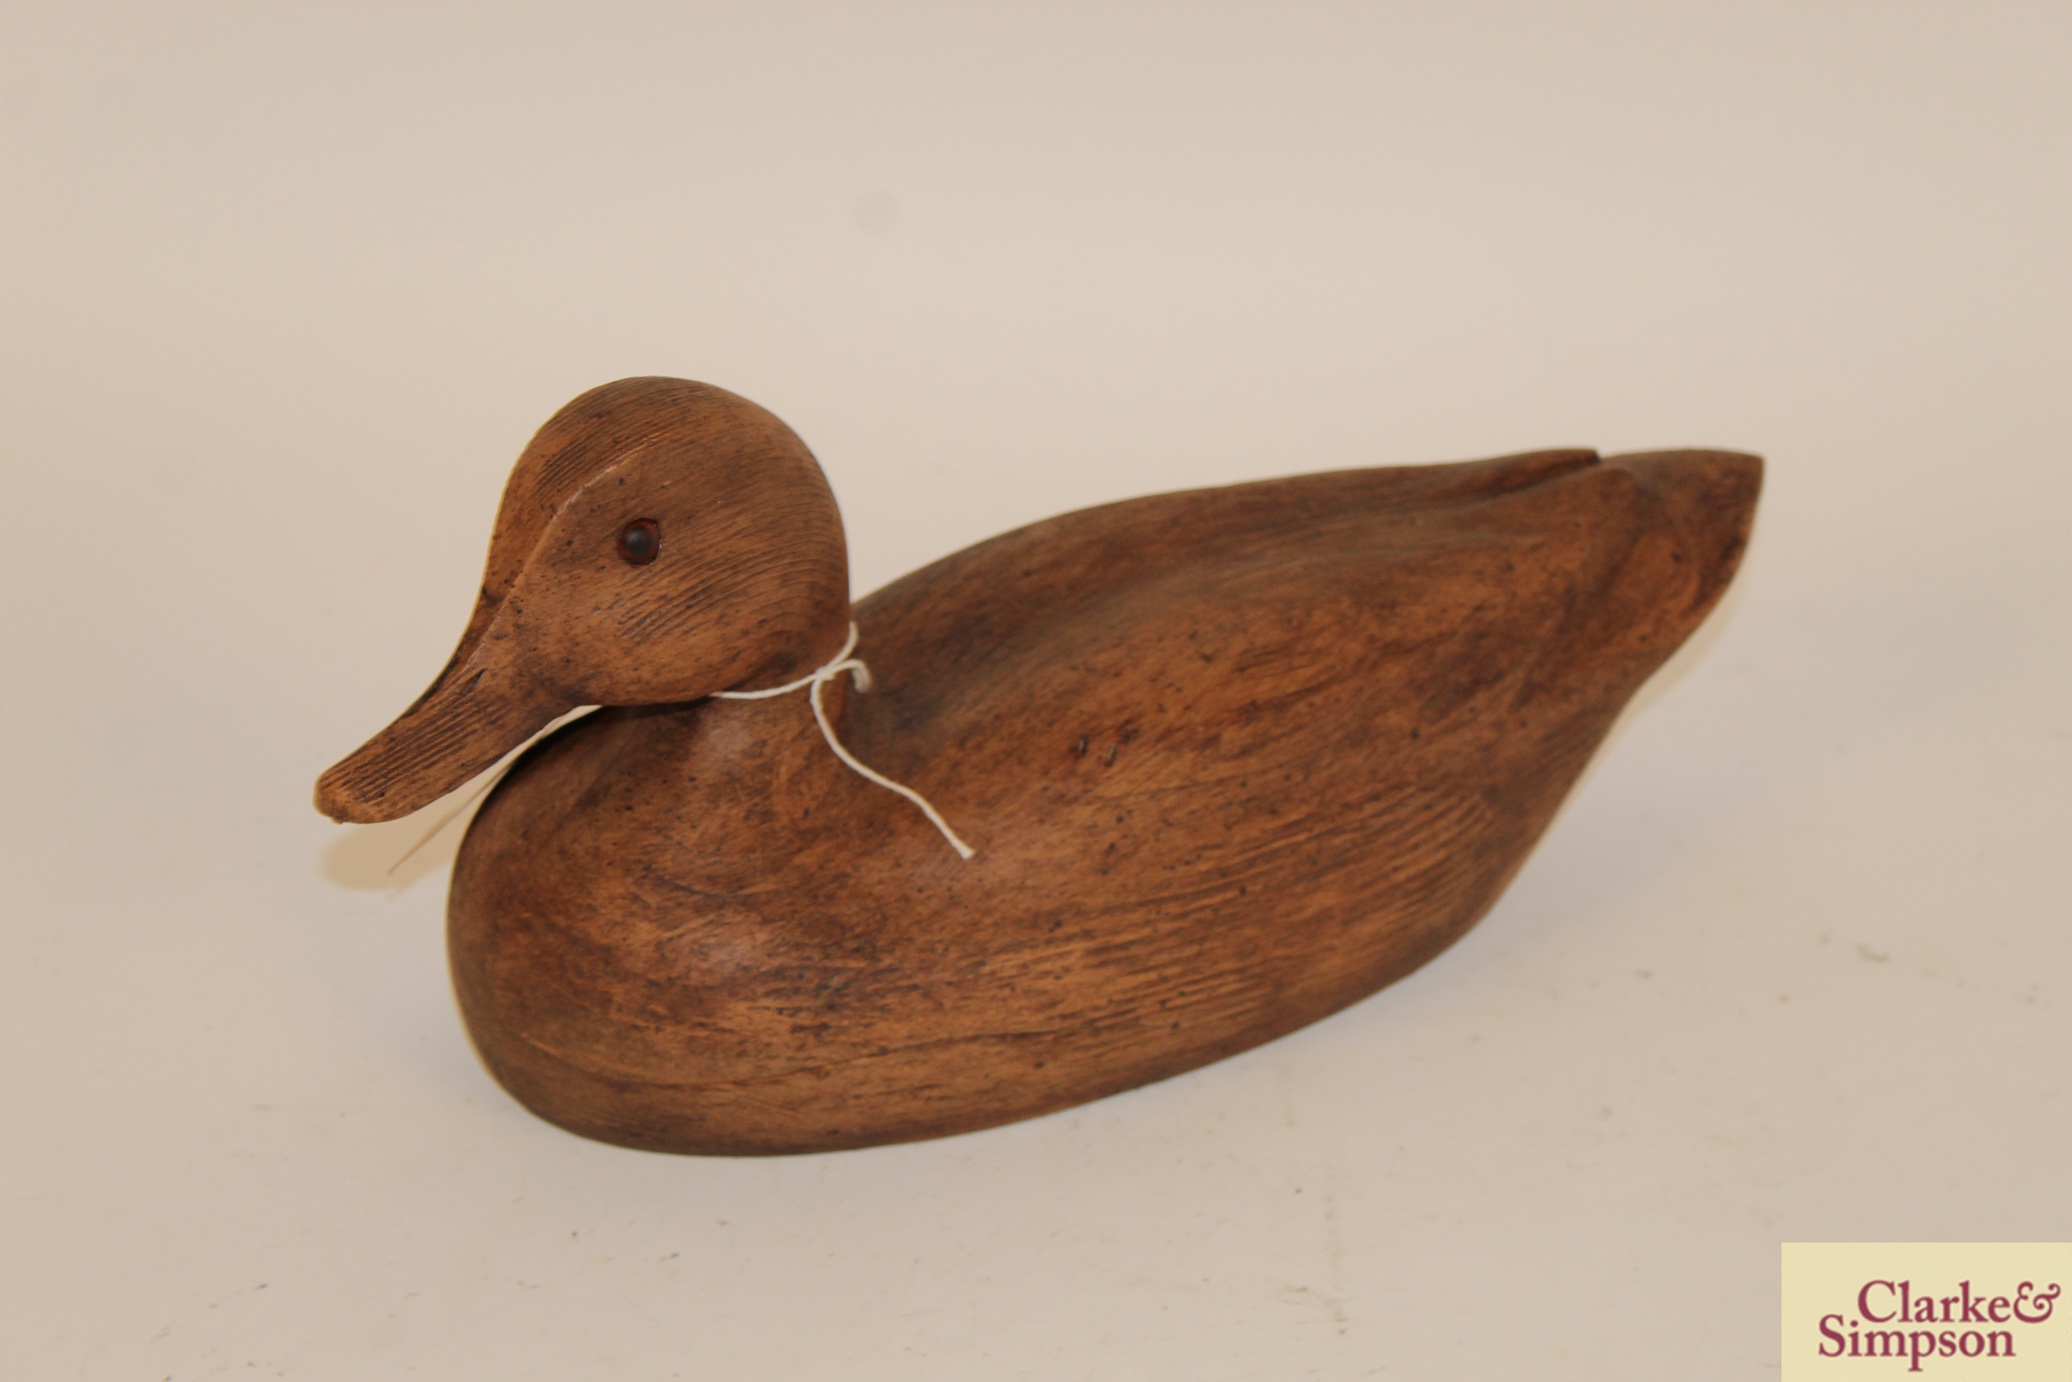 An old wooden decoy duck